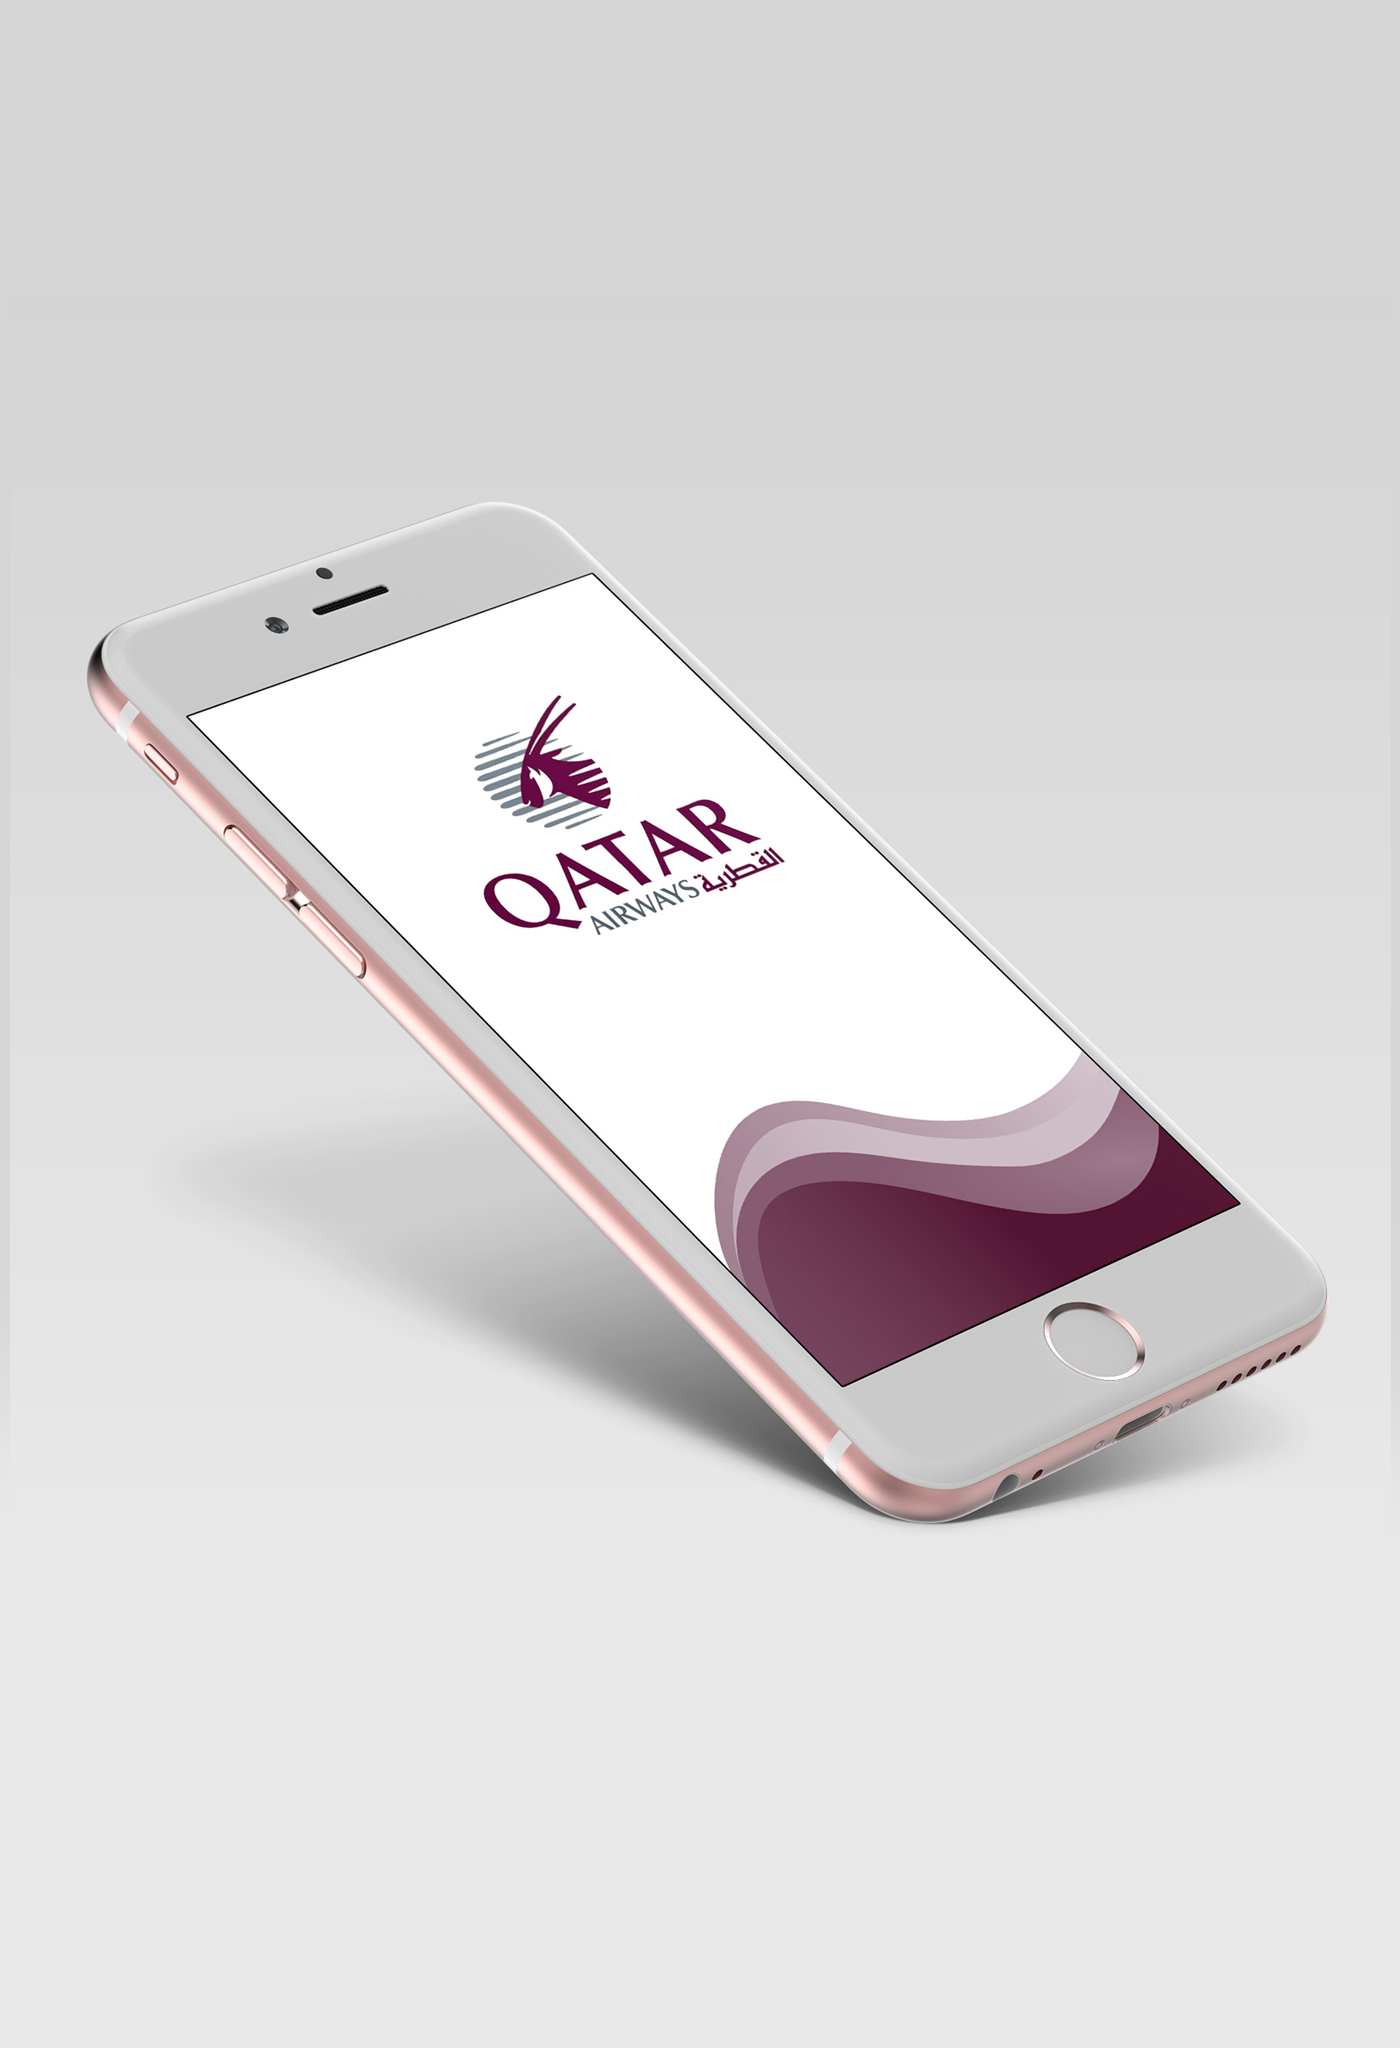 Qatar Airways App Redesign